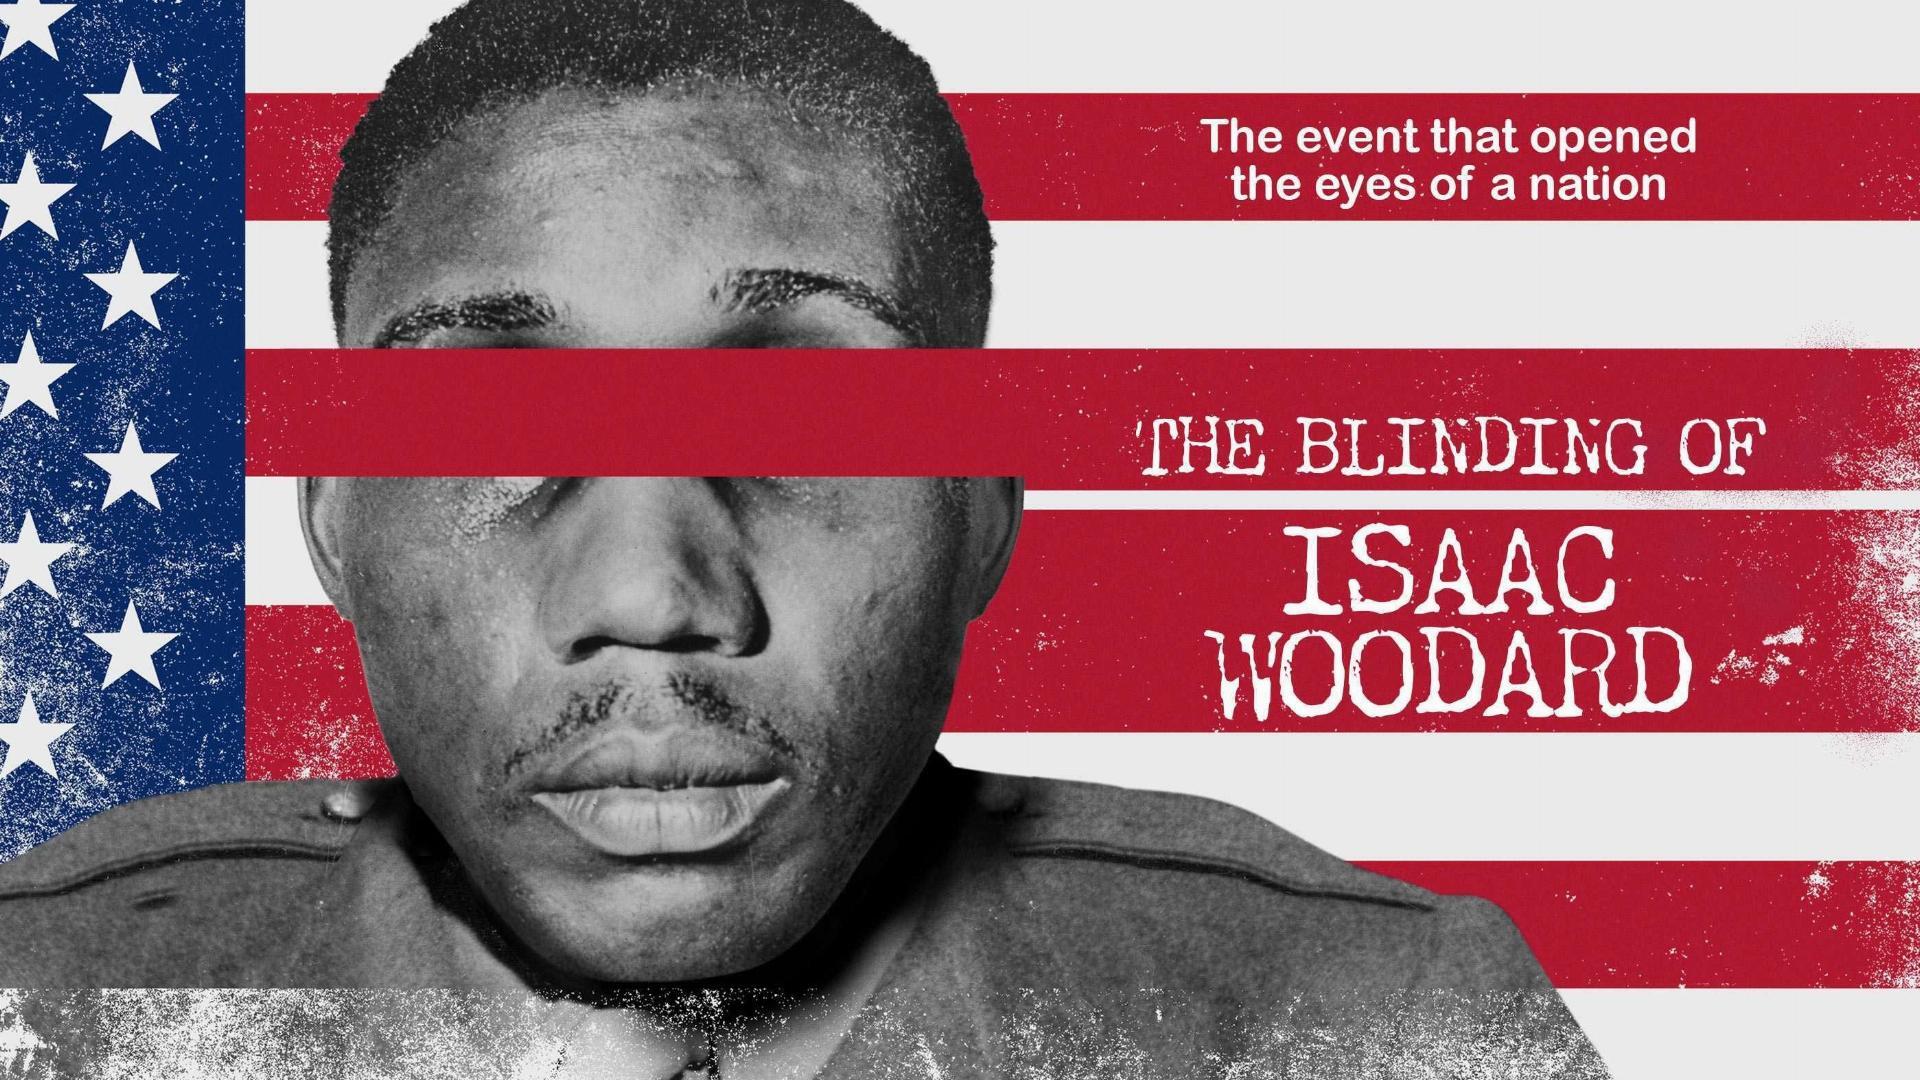 ისააკ ვუდარდის დაბრმავება / The Blinding of Isaac Woodard